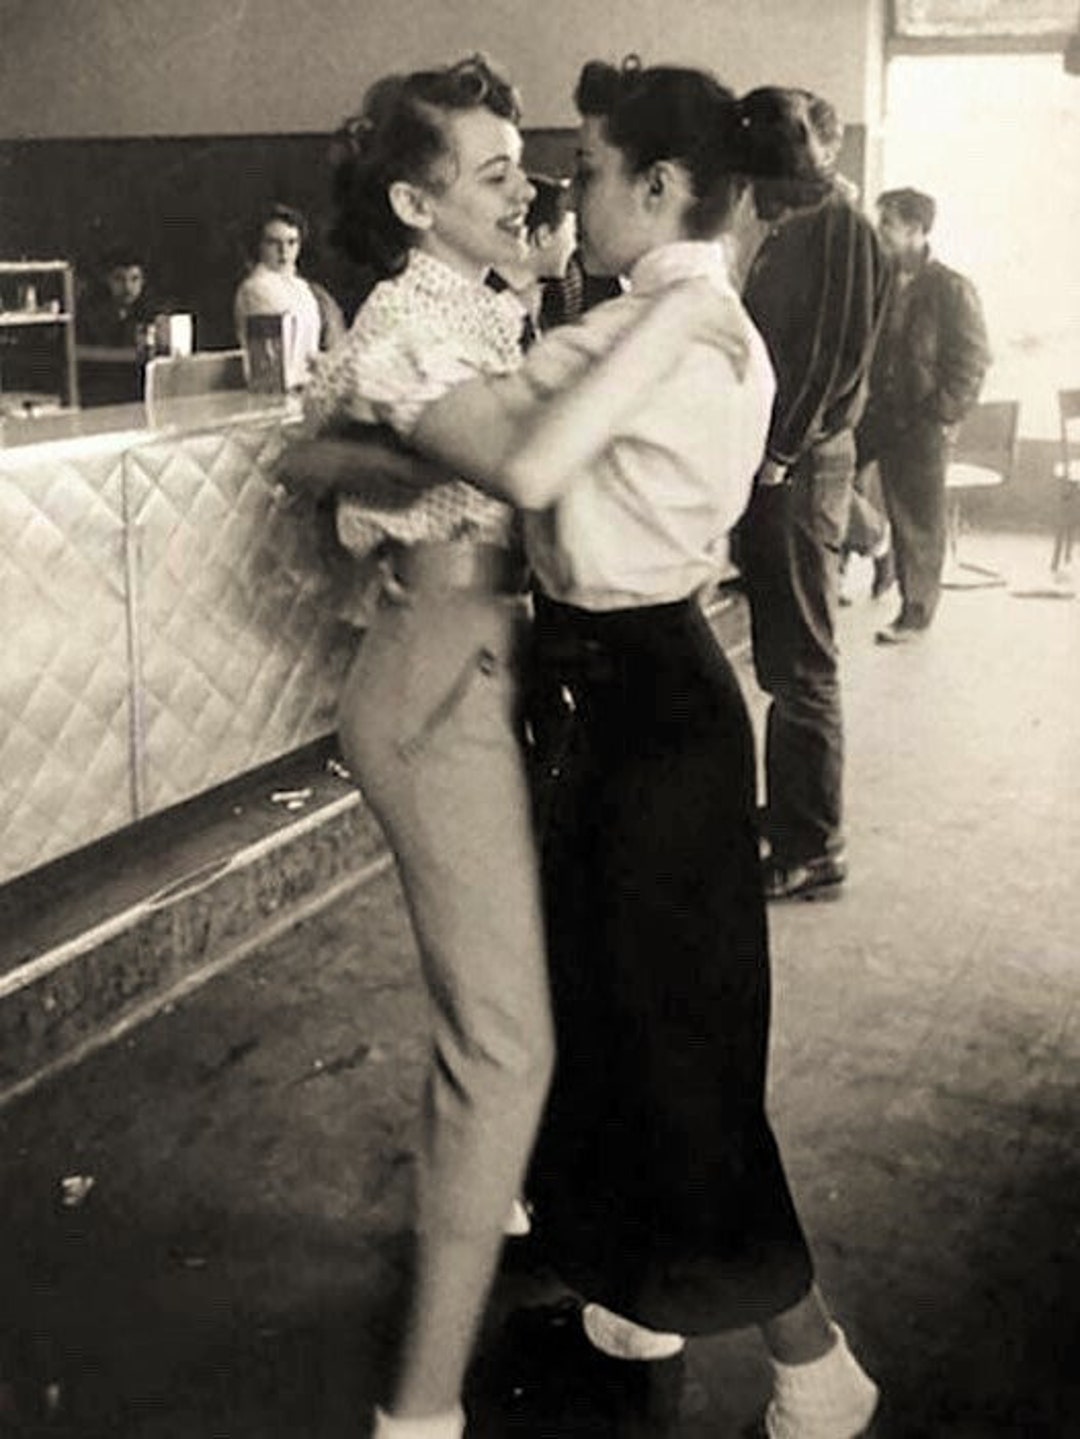 Lesbians Dancing 1950s Public Affection Butch Femme